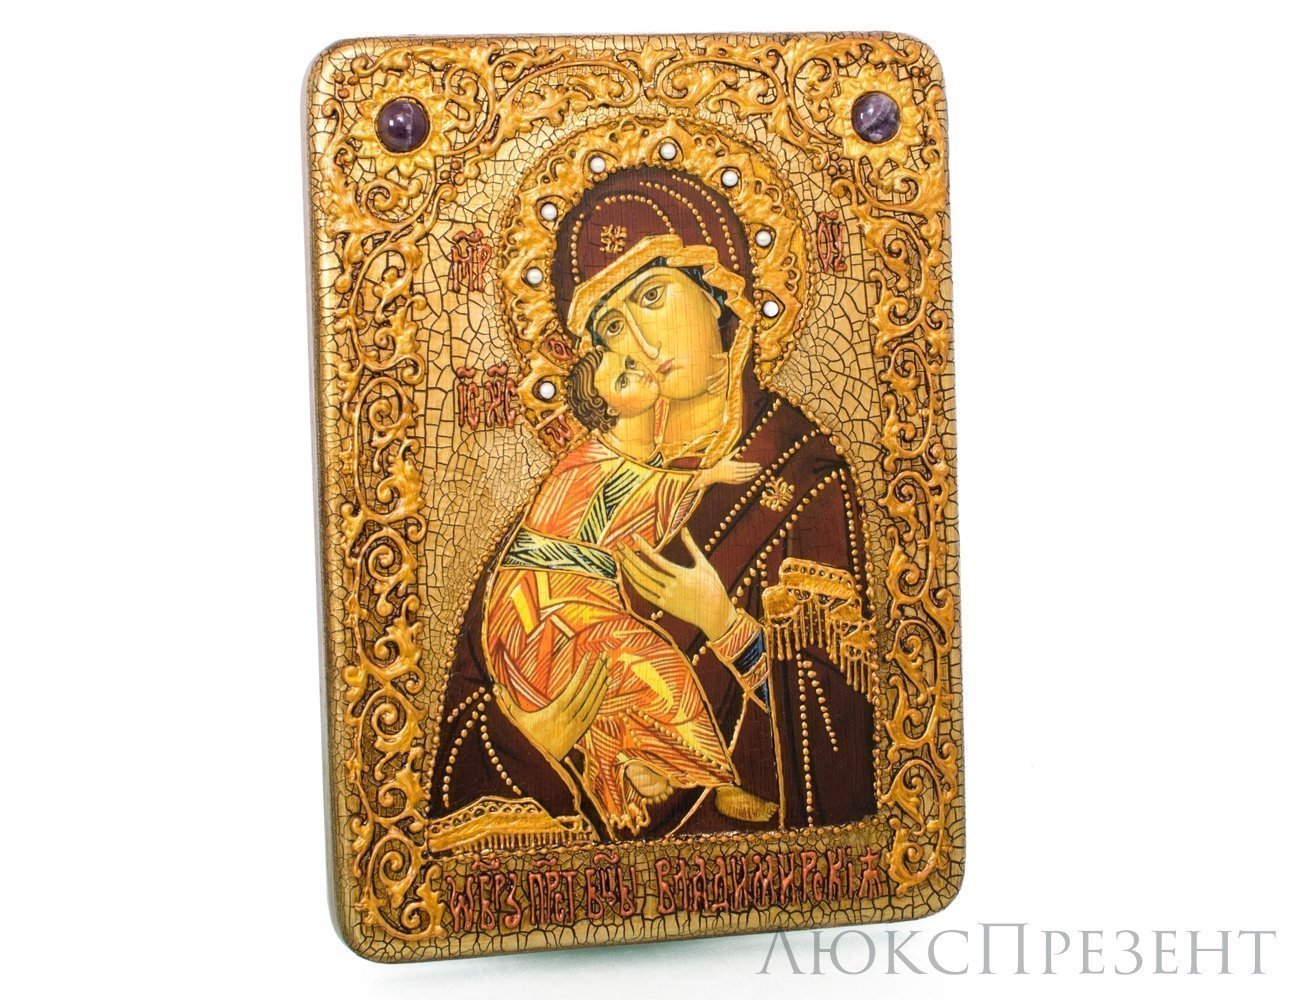 Подарочная икона Образ Владимирской Божьей Матери